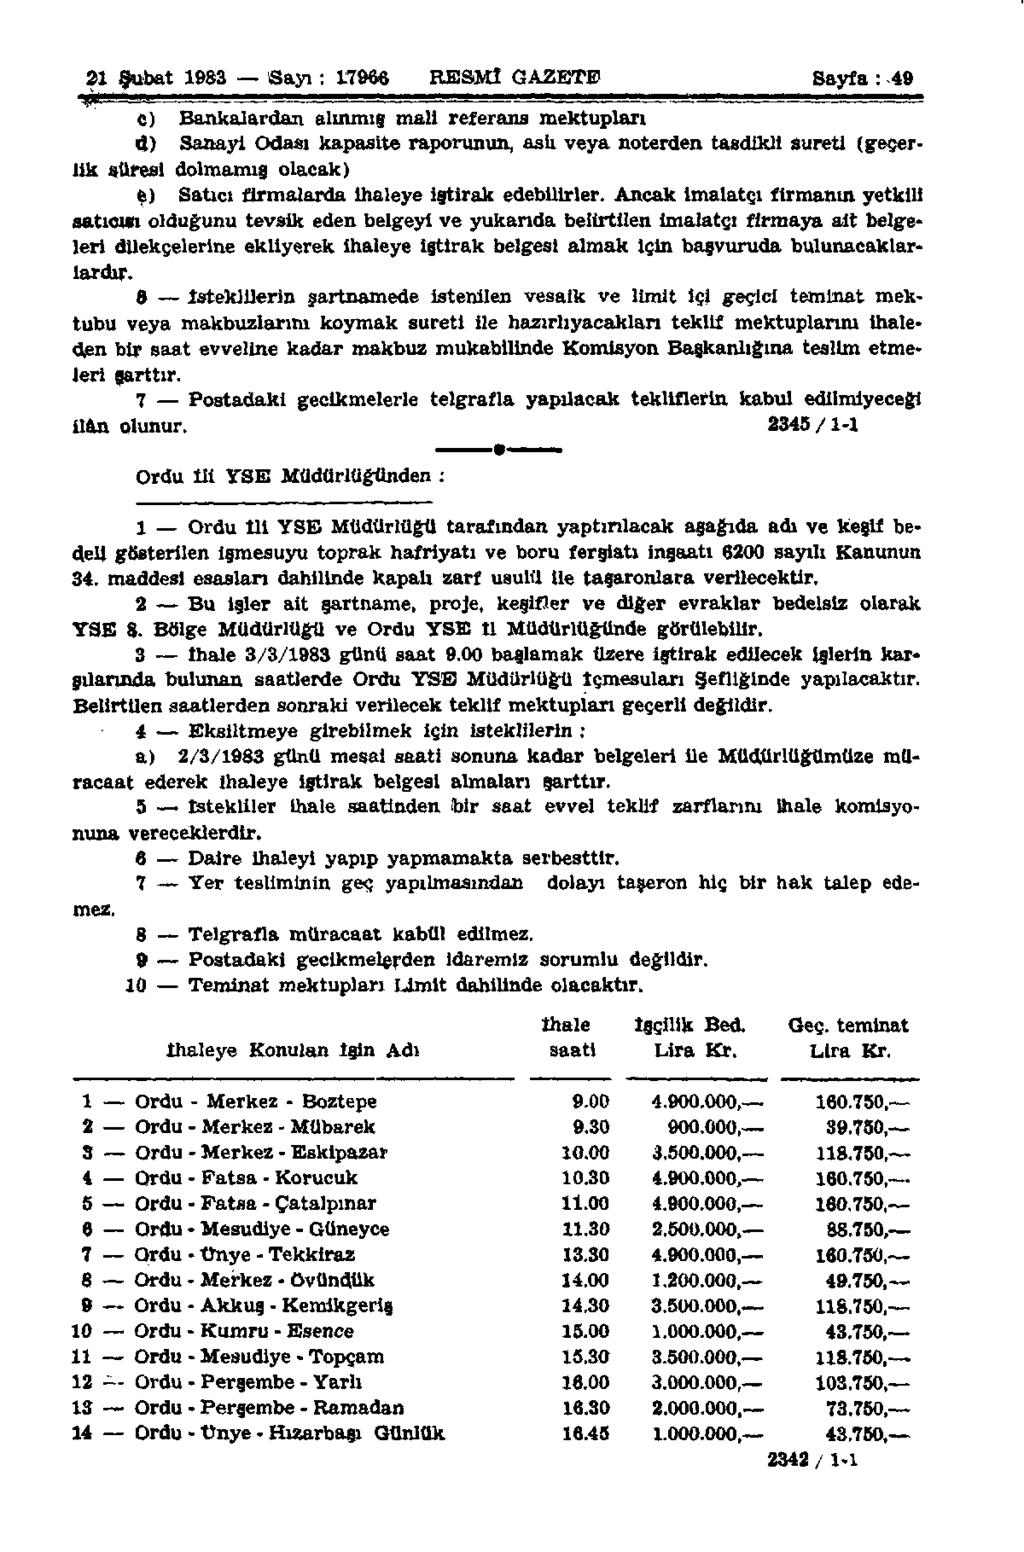 21 Şubat 1983 Sayı: 17966 RESMÎ GAZETE Sayfa : 49 ftmu,,, l - B - C) Bankalardan alınmış mali referans mektupları d) Sanayi Odası kapasite raporunun, aslı veya noterden tasdikli Sureti (geçerlik